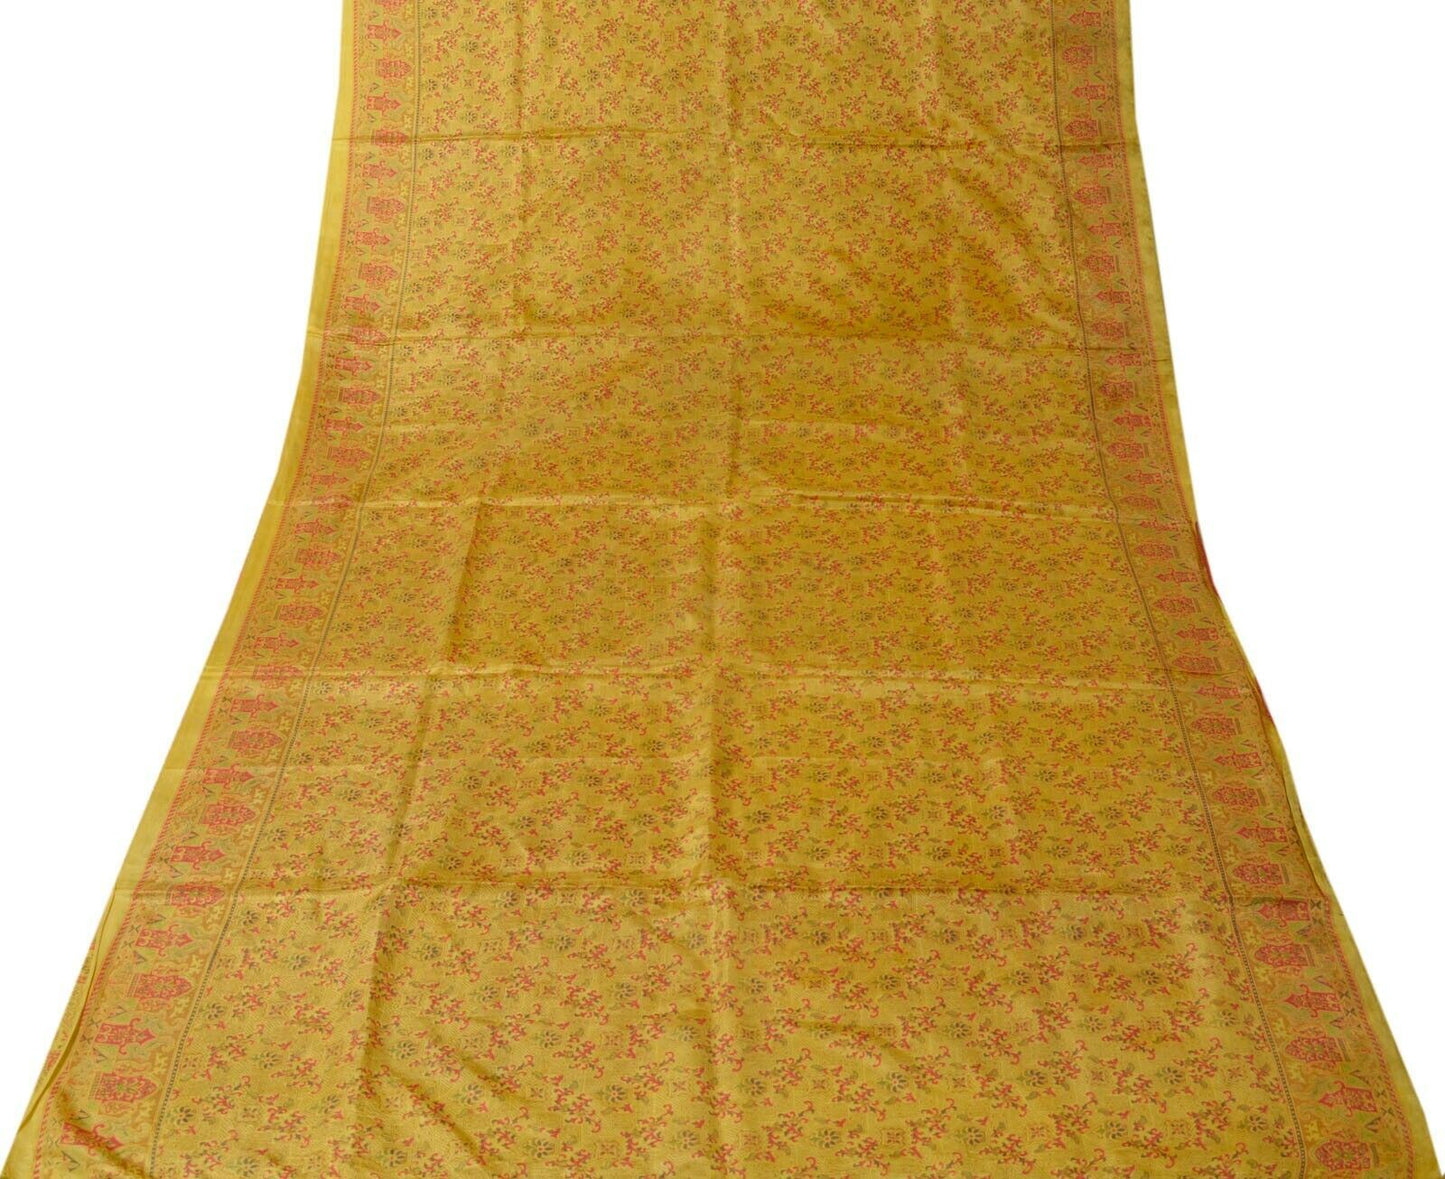 Vintage Indian Art Silk Scrap Saree Printed Craft Sari Remnant Craft Fabric